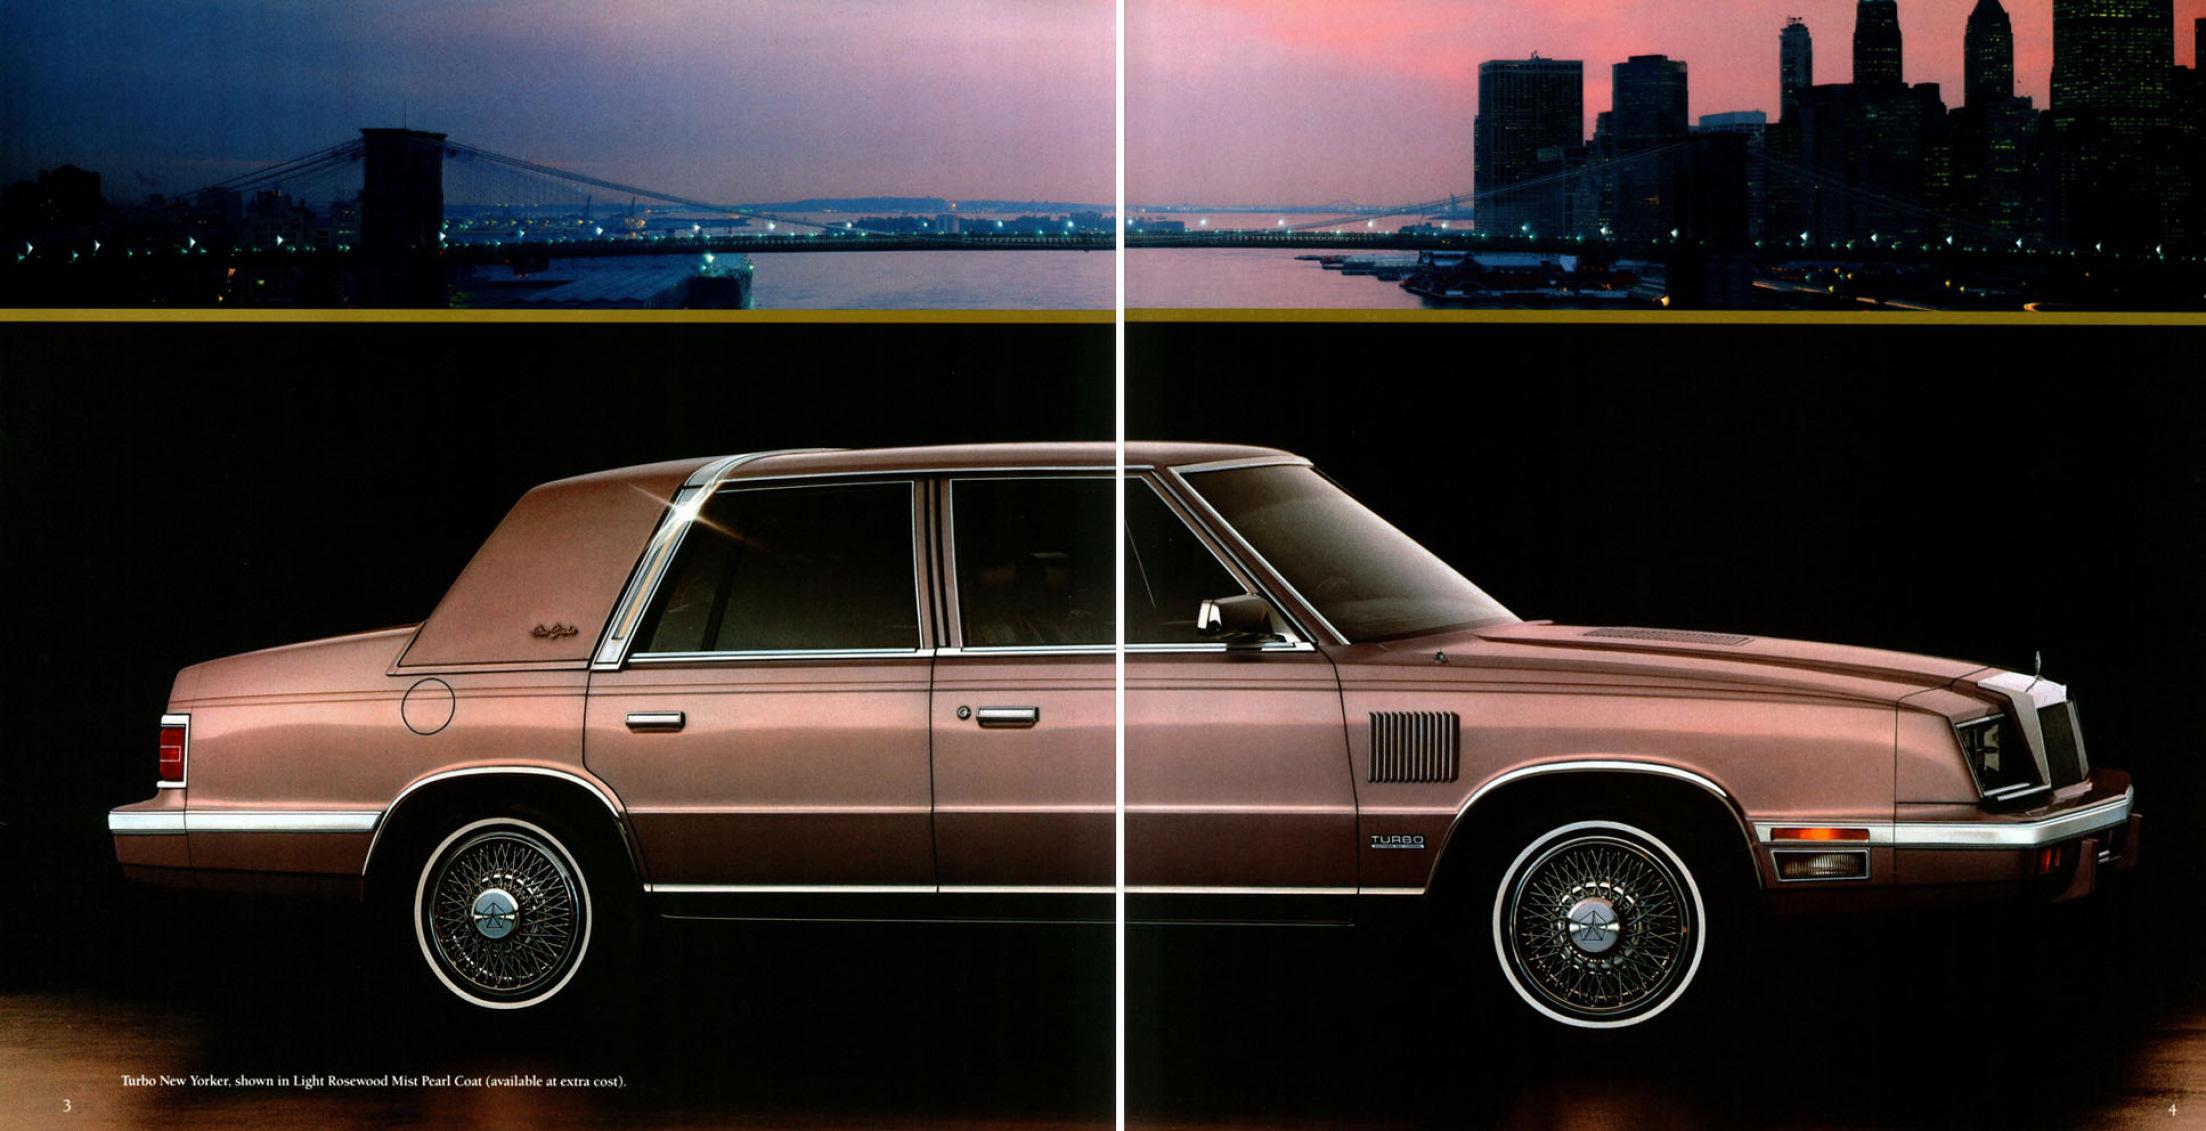 1986 Chrysler New Yorker-03-04